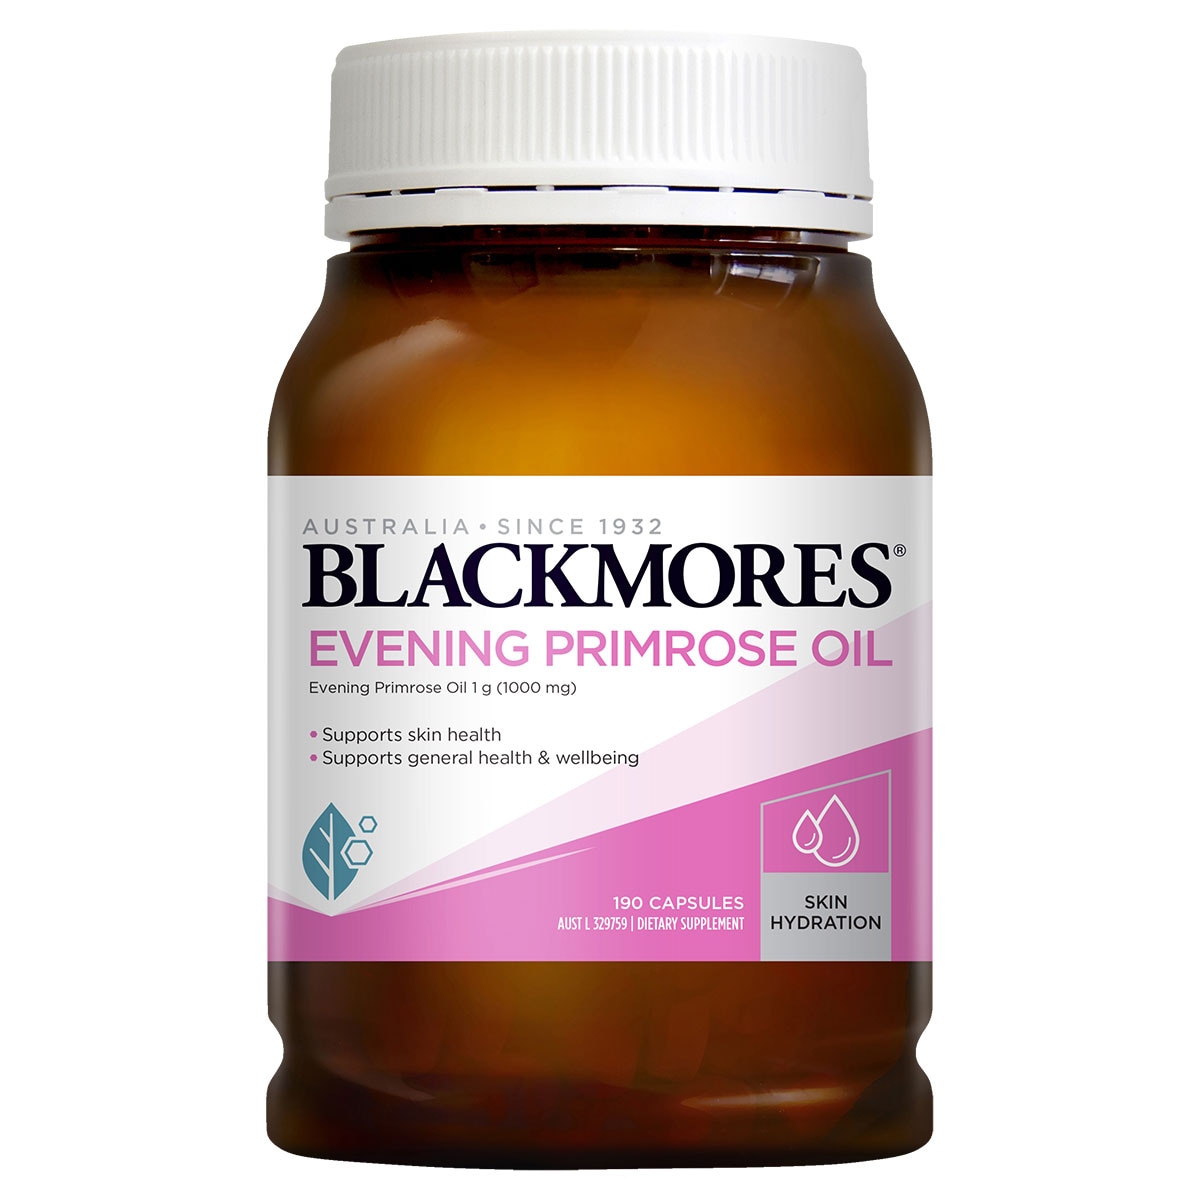 Blackmores Evening Primrose Oil 1000mg 190 Capsules